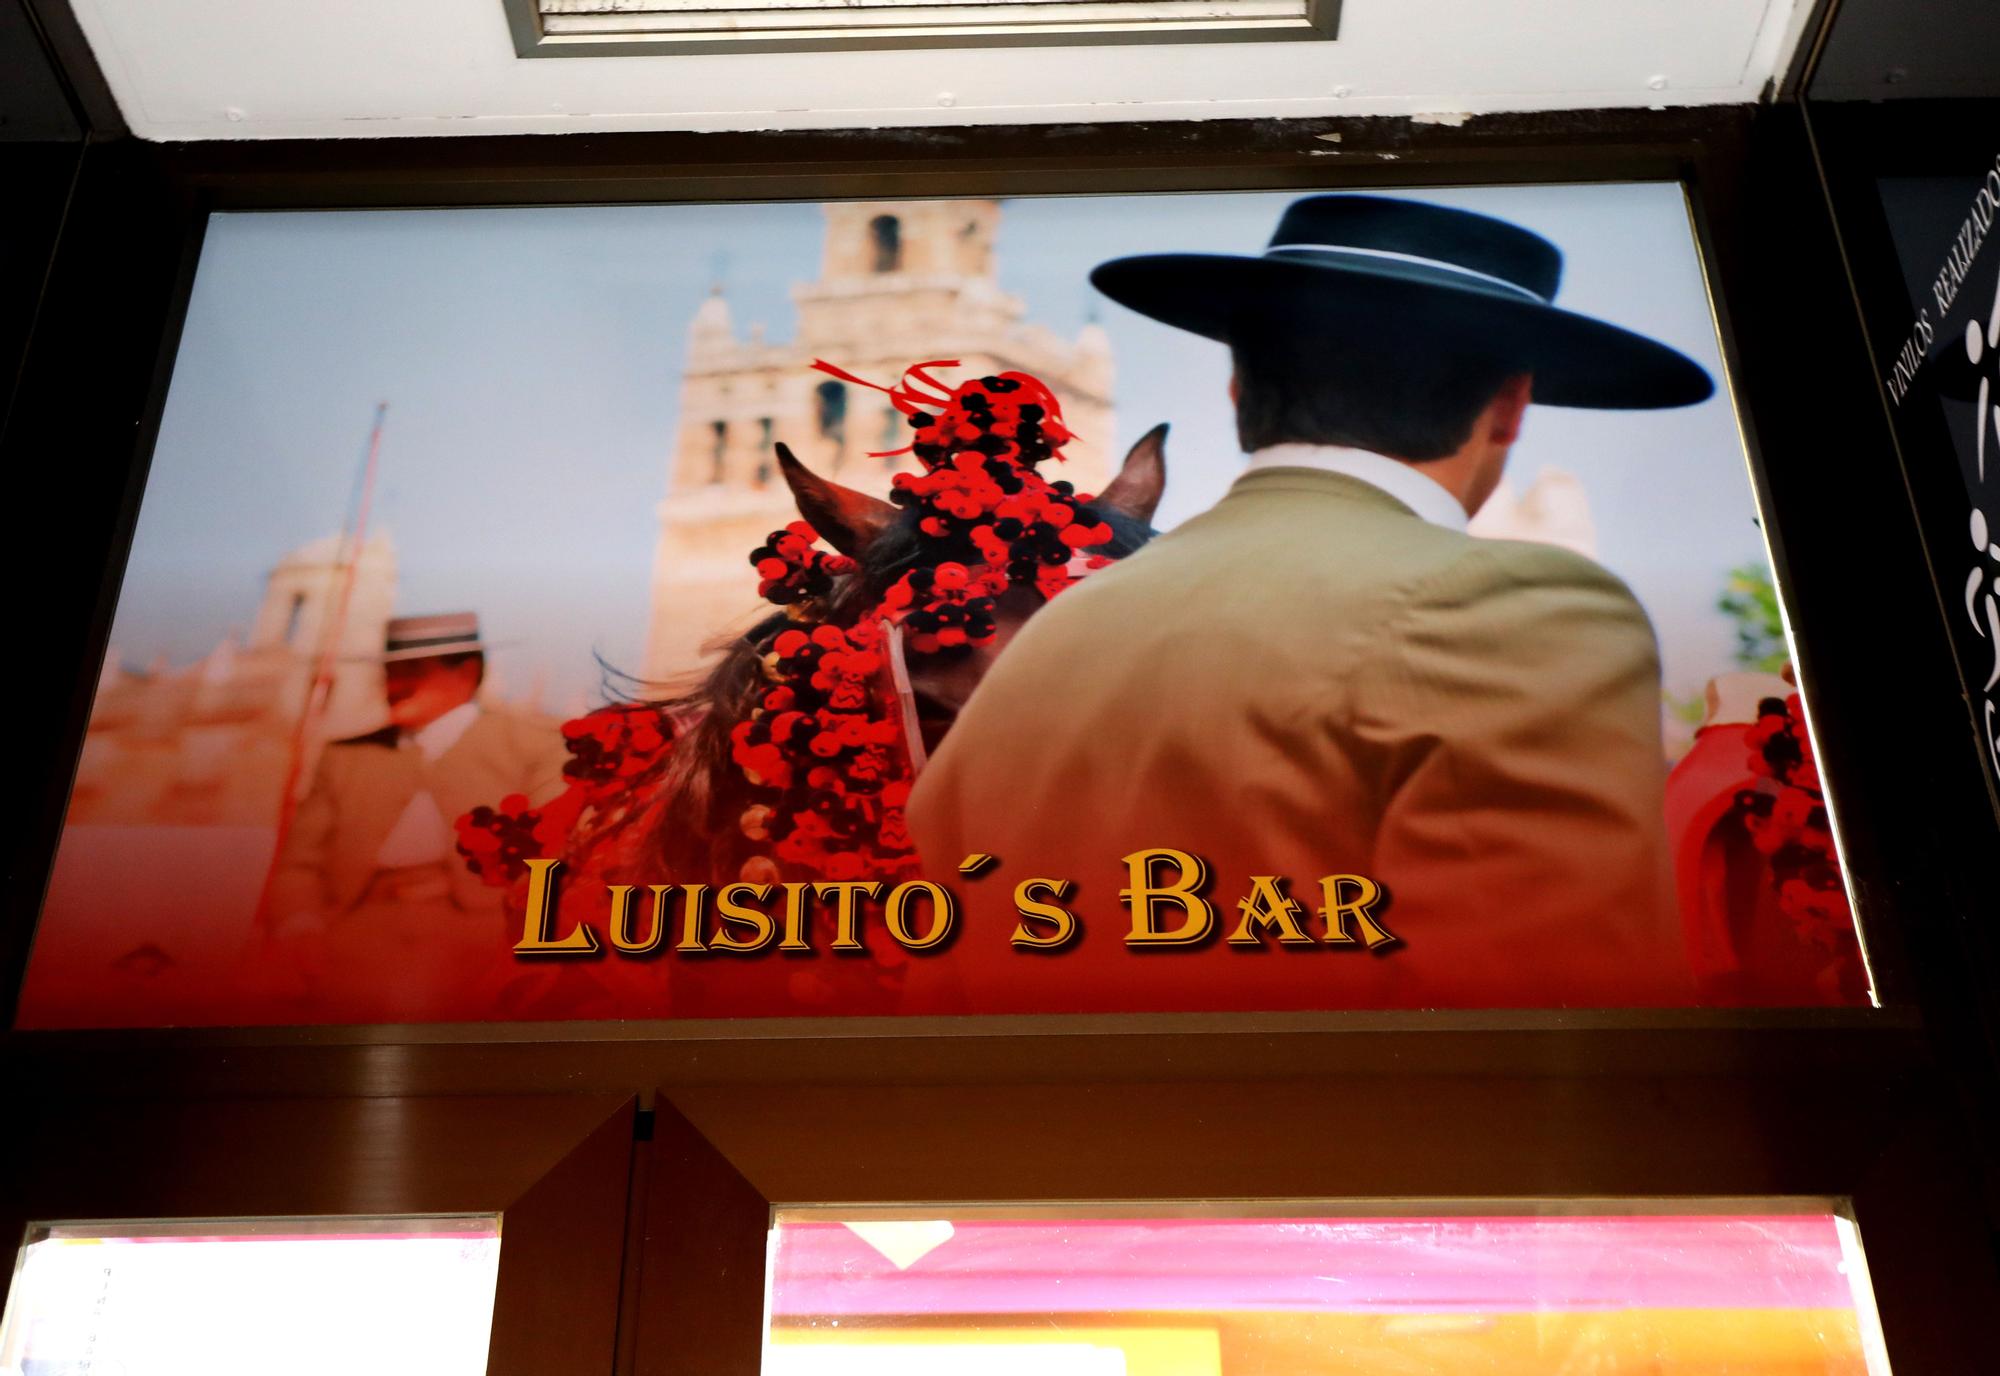 Así es el Luisito's bar, un referente de la gastronomía andaluza en Zaragoza